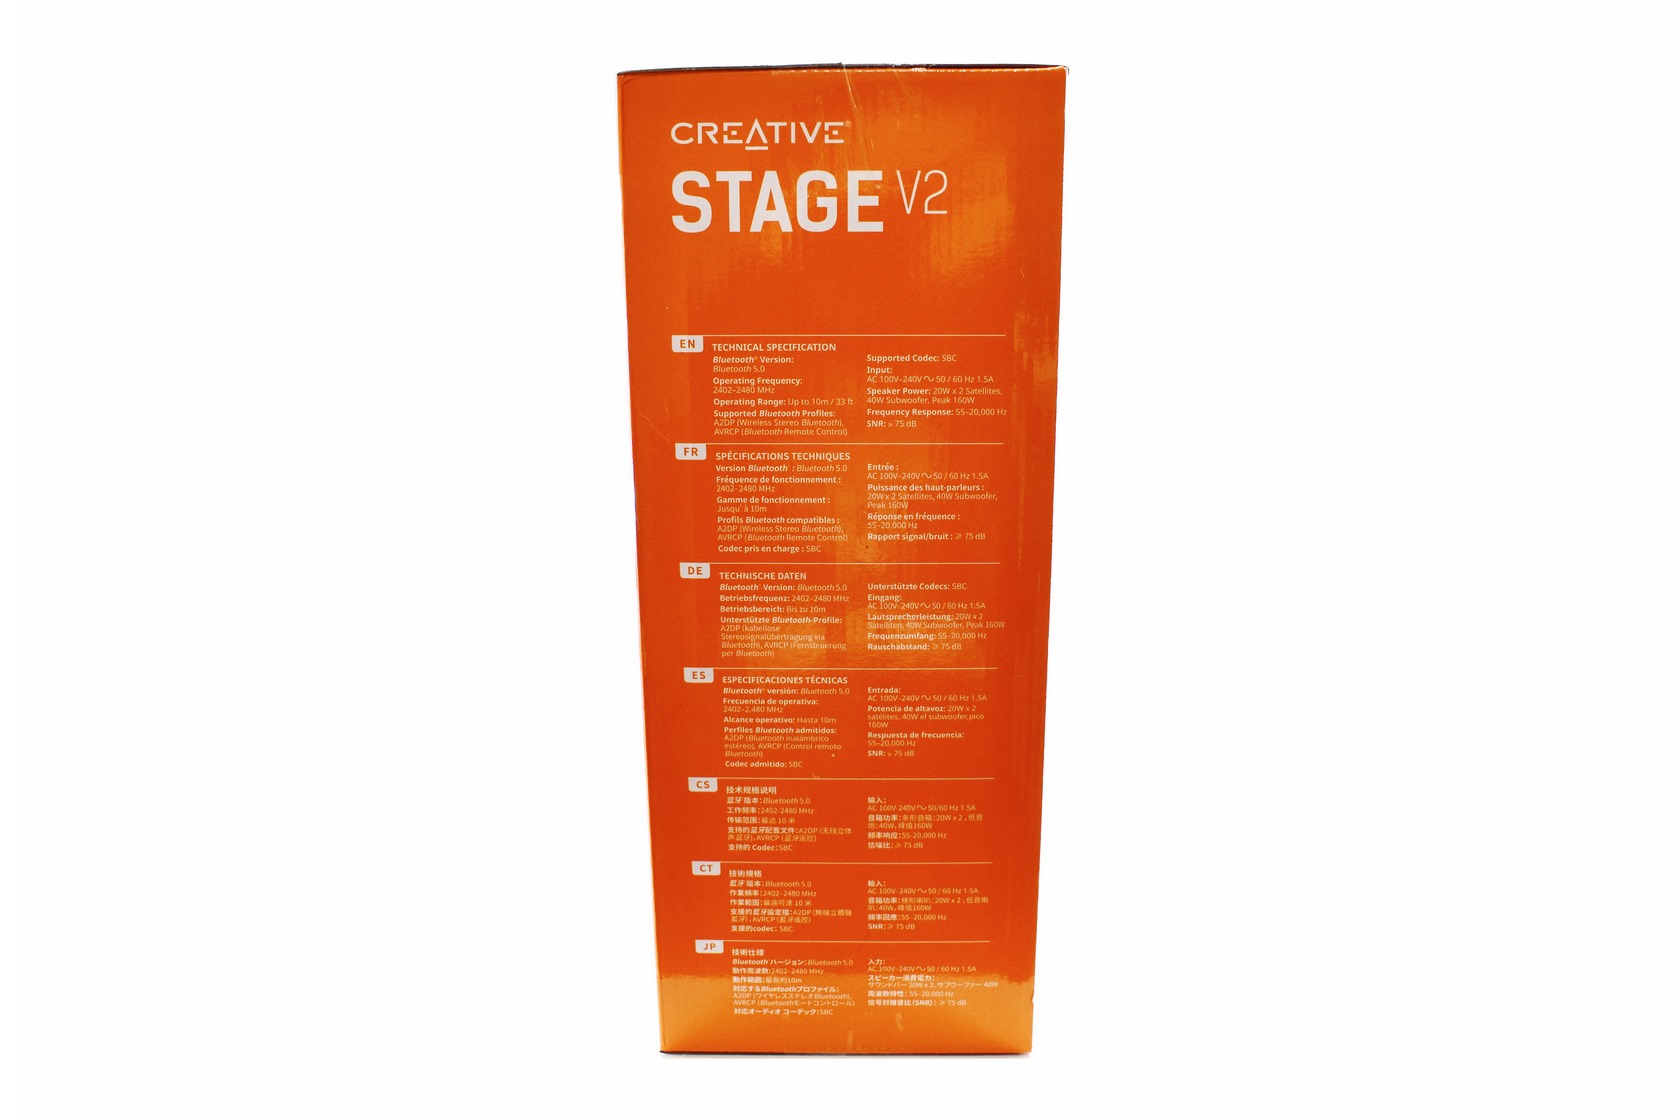 Creative Stage V2 2.1 Soundbar Review